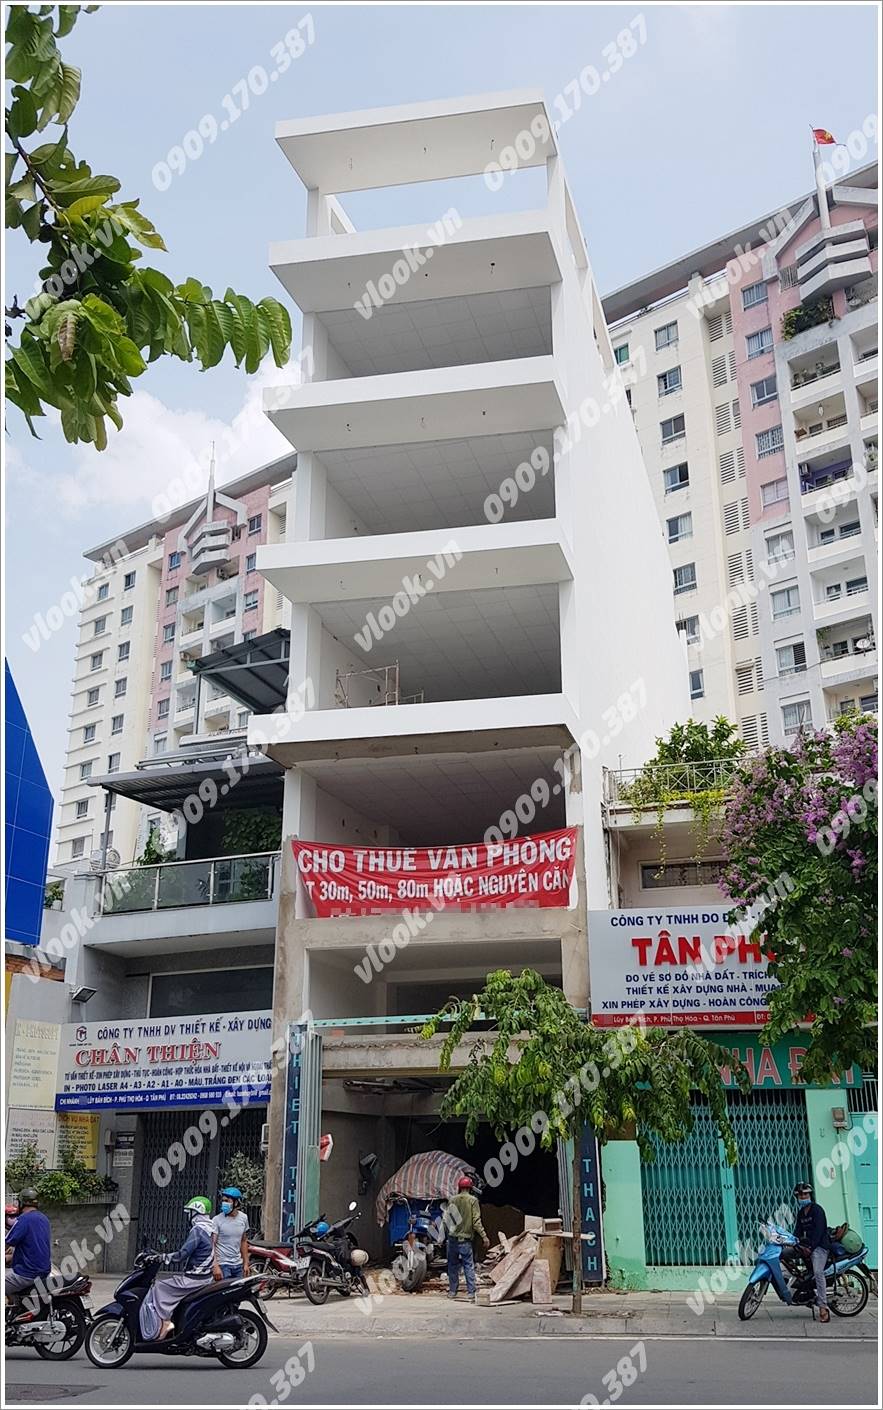 Cao ốc cho thuê văn phòng Hoàng Long Building, Lũy Bán Bích, Quận Tân Phú, TPHCM - vlook.vn